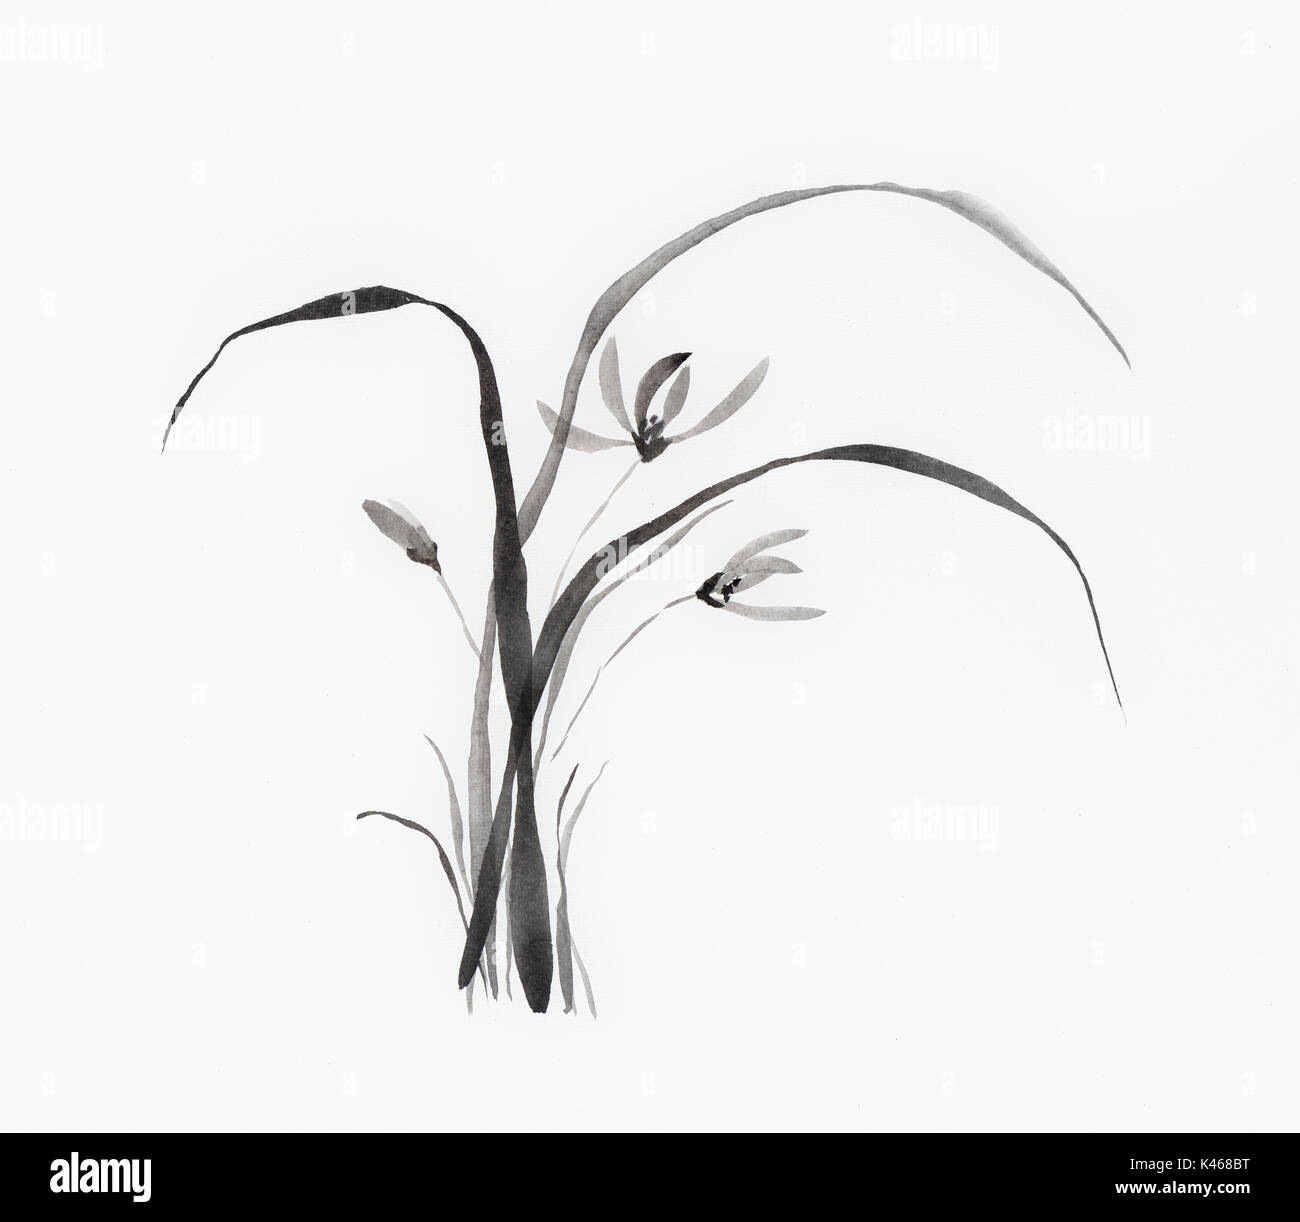 Licence disponible à MaximImages.com - fleurs d'orchidées sauvages illustration japonaise Sumi-e Zen peinture à l'encre noire sur fond blanc de papier de riz Banque D'Images